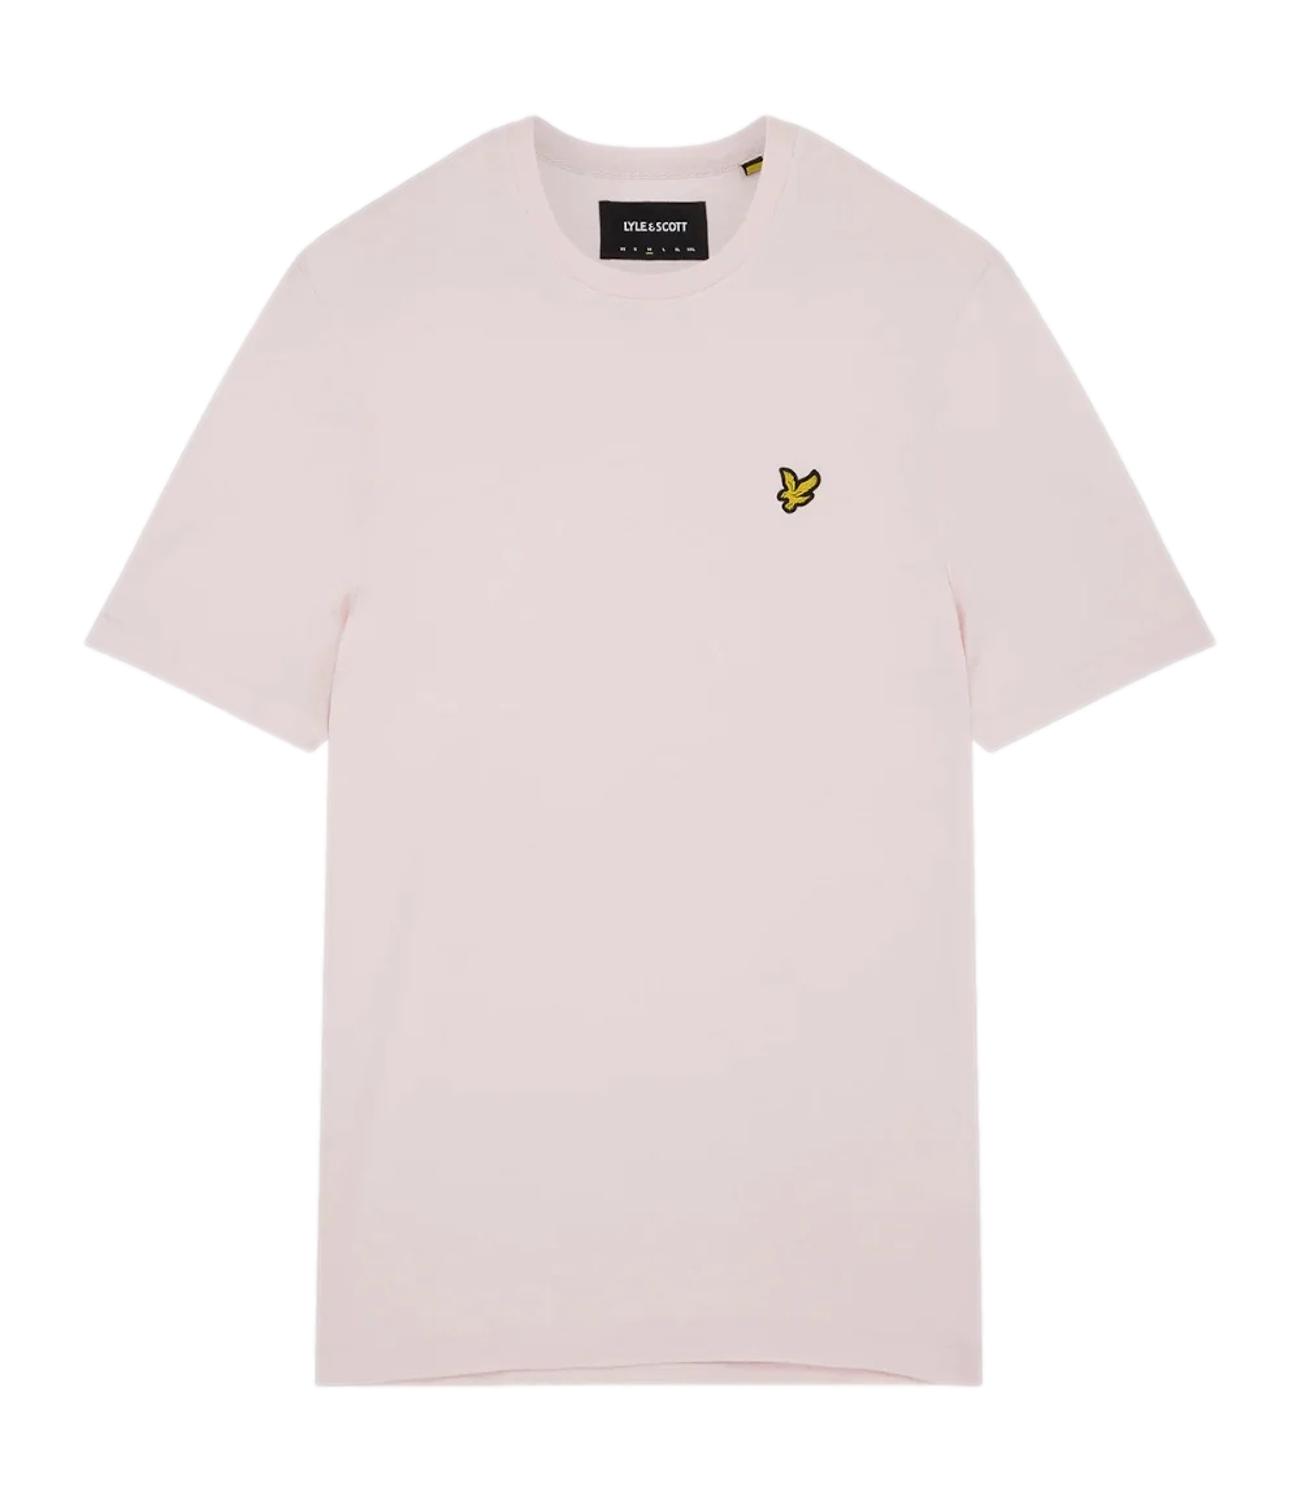 T-shirt Plain Lyle & Scott light pink